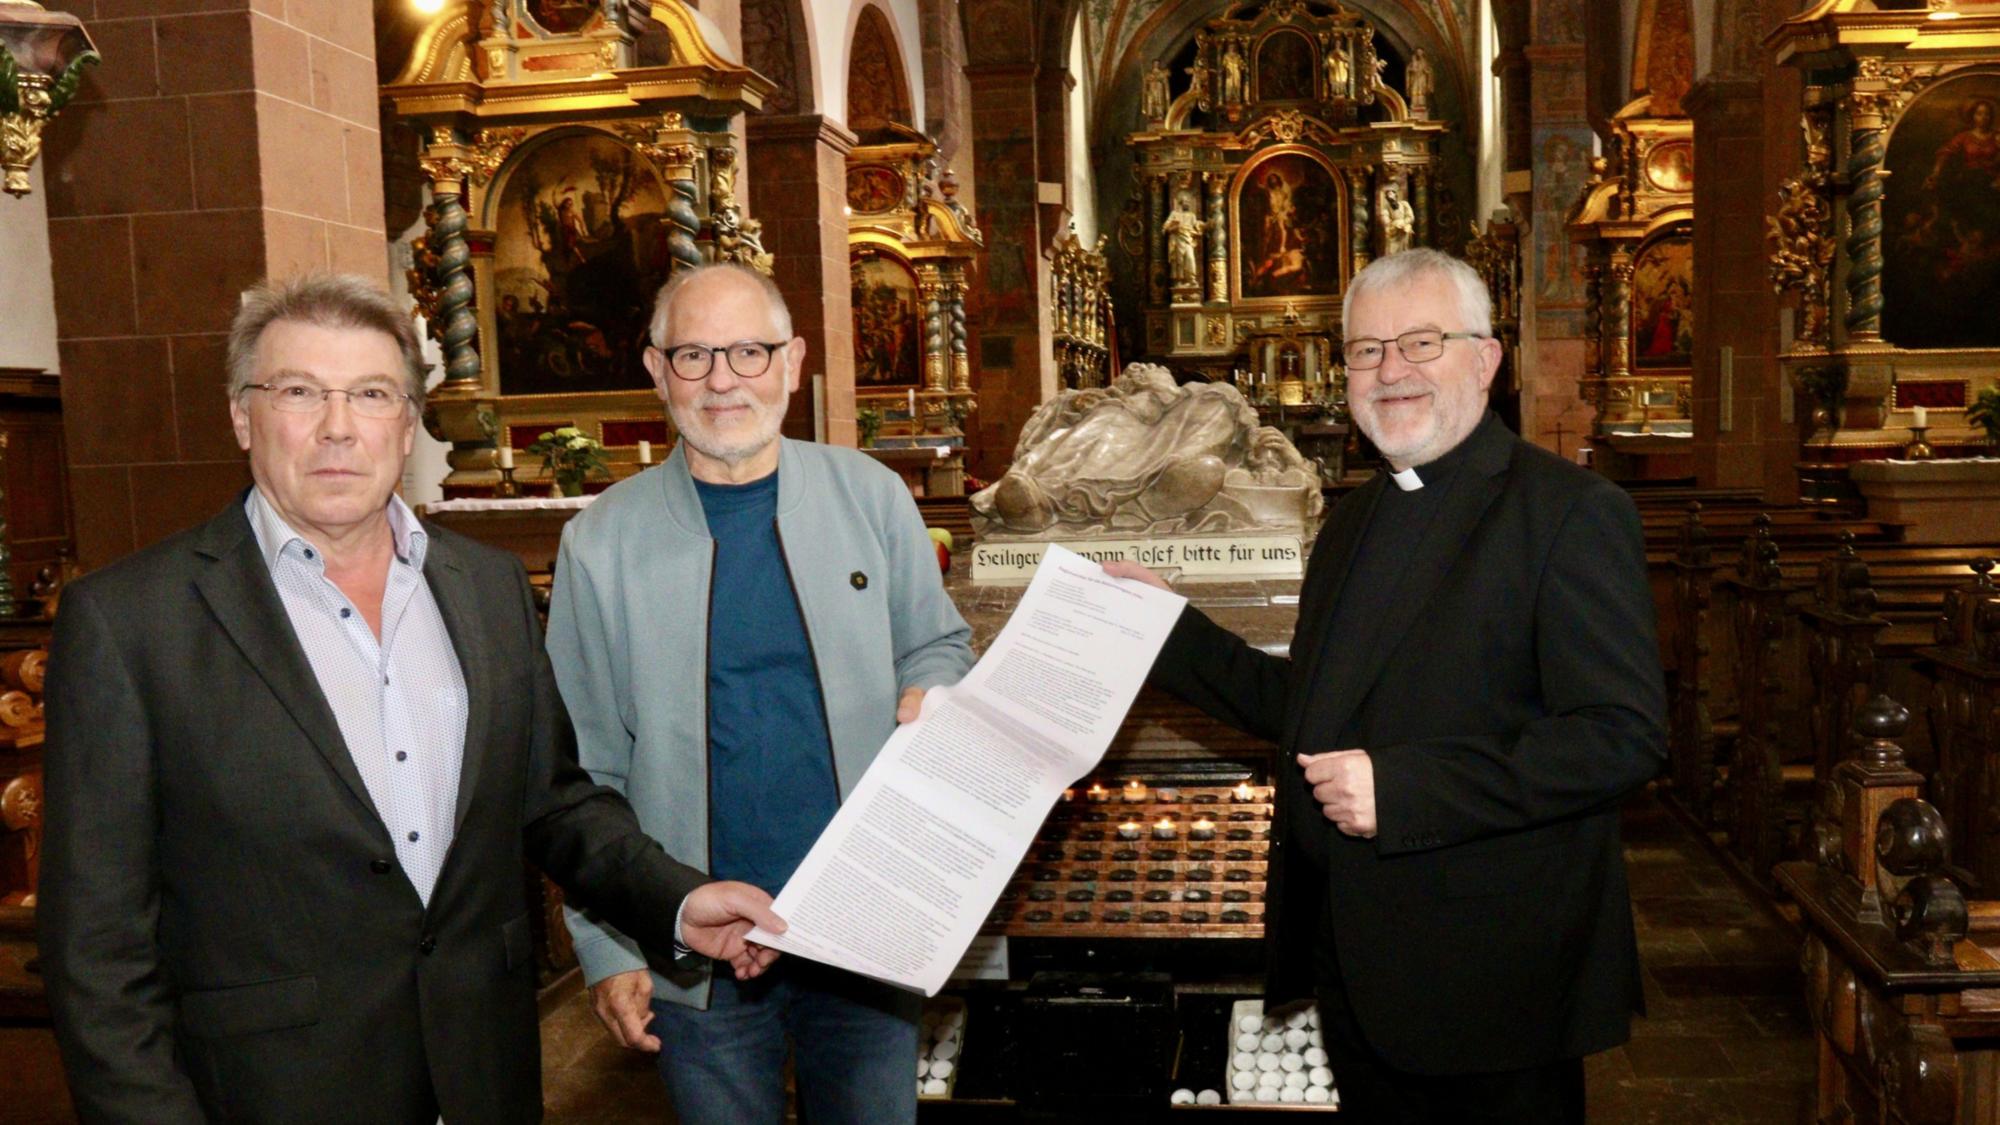 Das Regionalteam Eifel, bestehend aus Regionalvikar Pater Wieslaw Kaczor SDS, Pastoralreferent Georg Nilles und Erich Dederichs (v.l.), sieht große pastorale Chancen im Veränderungsprozess und schickt einen offenen Brief nach Rom.